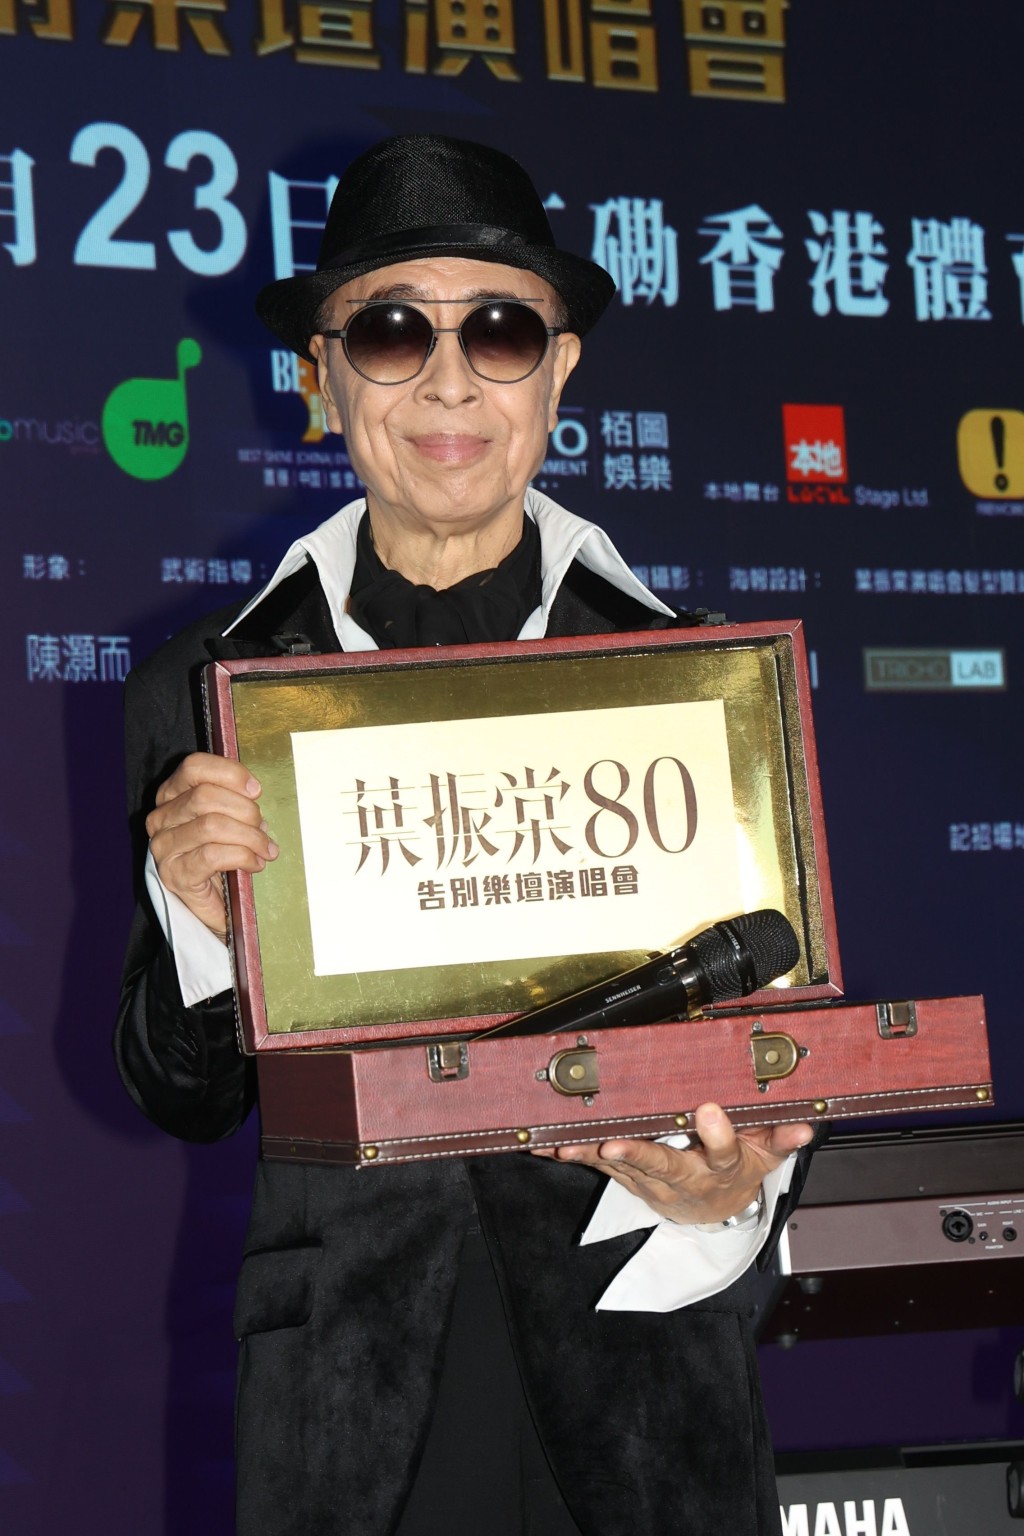 现年80岁的殿堂级歌手叶振棠，将于下月23日举行首个红馆演唱会「叶振棠 80告别乐坛演唱会」。